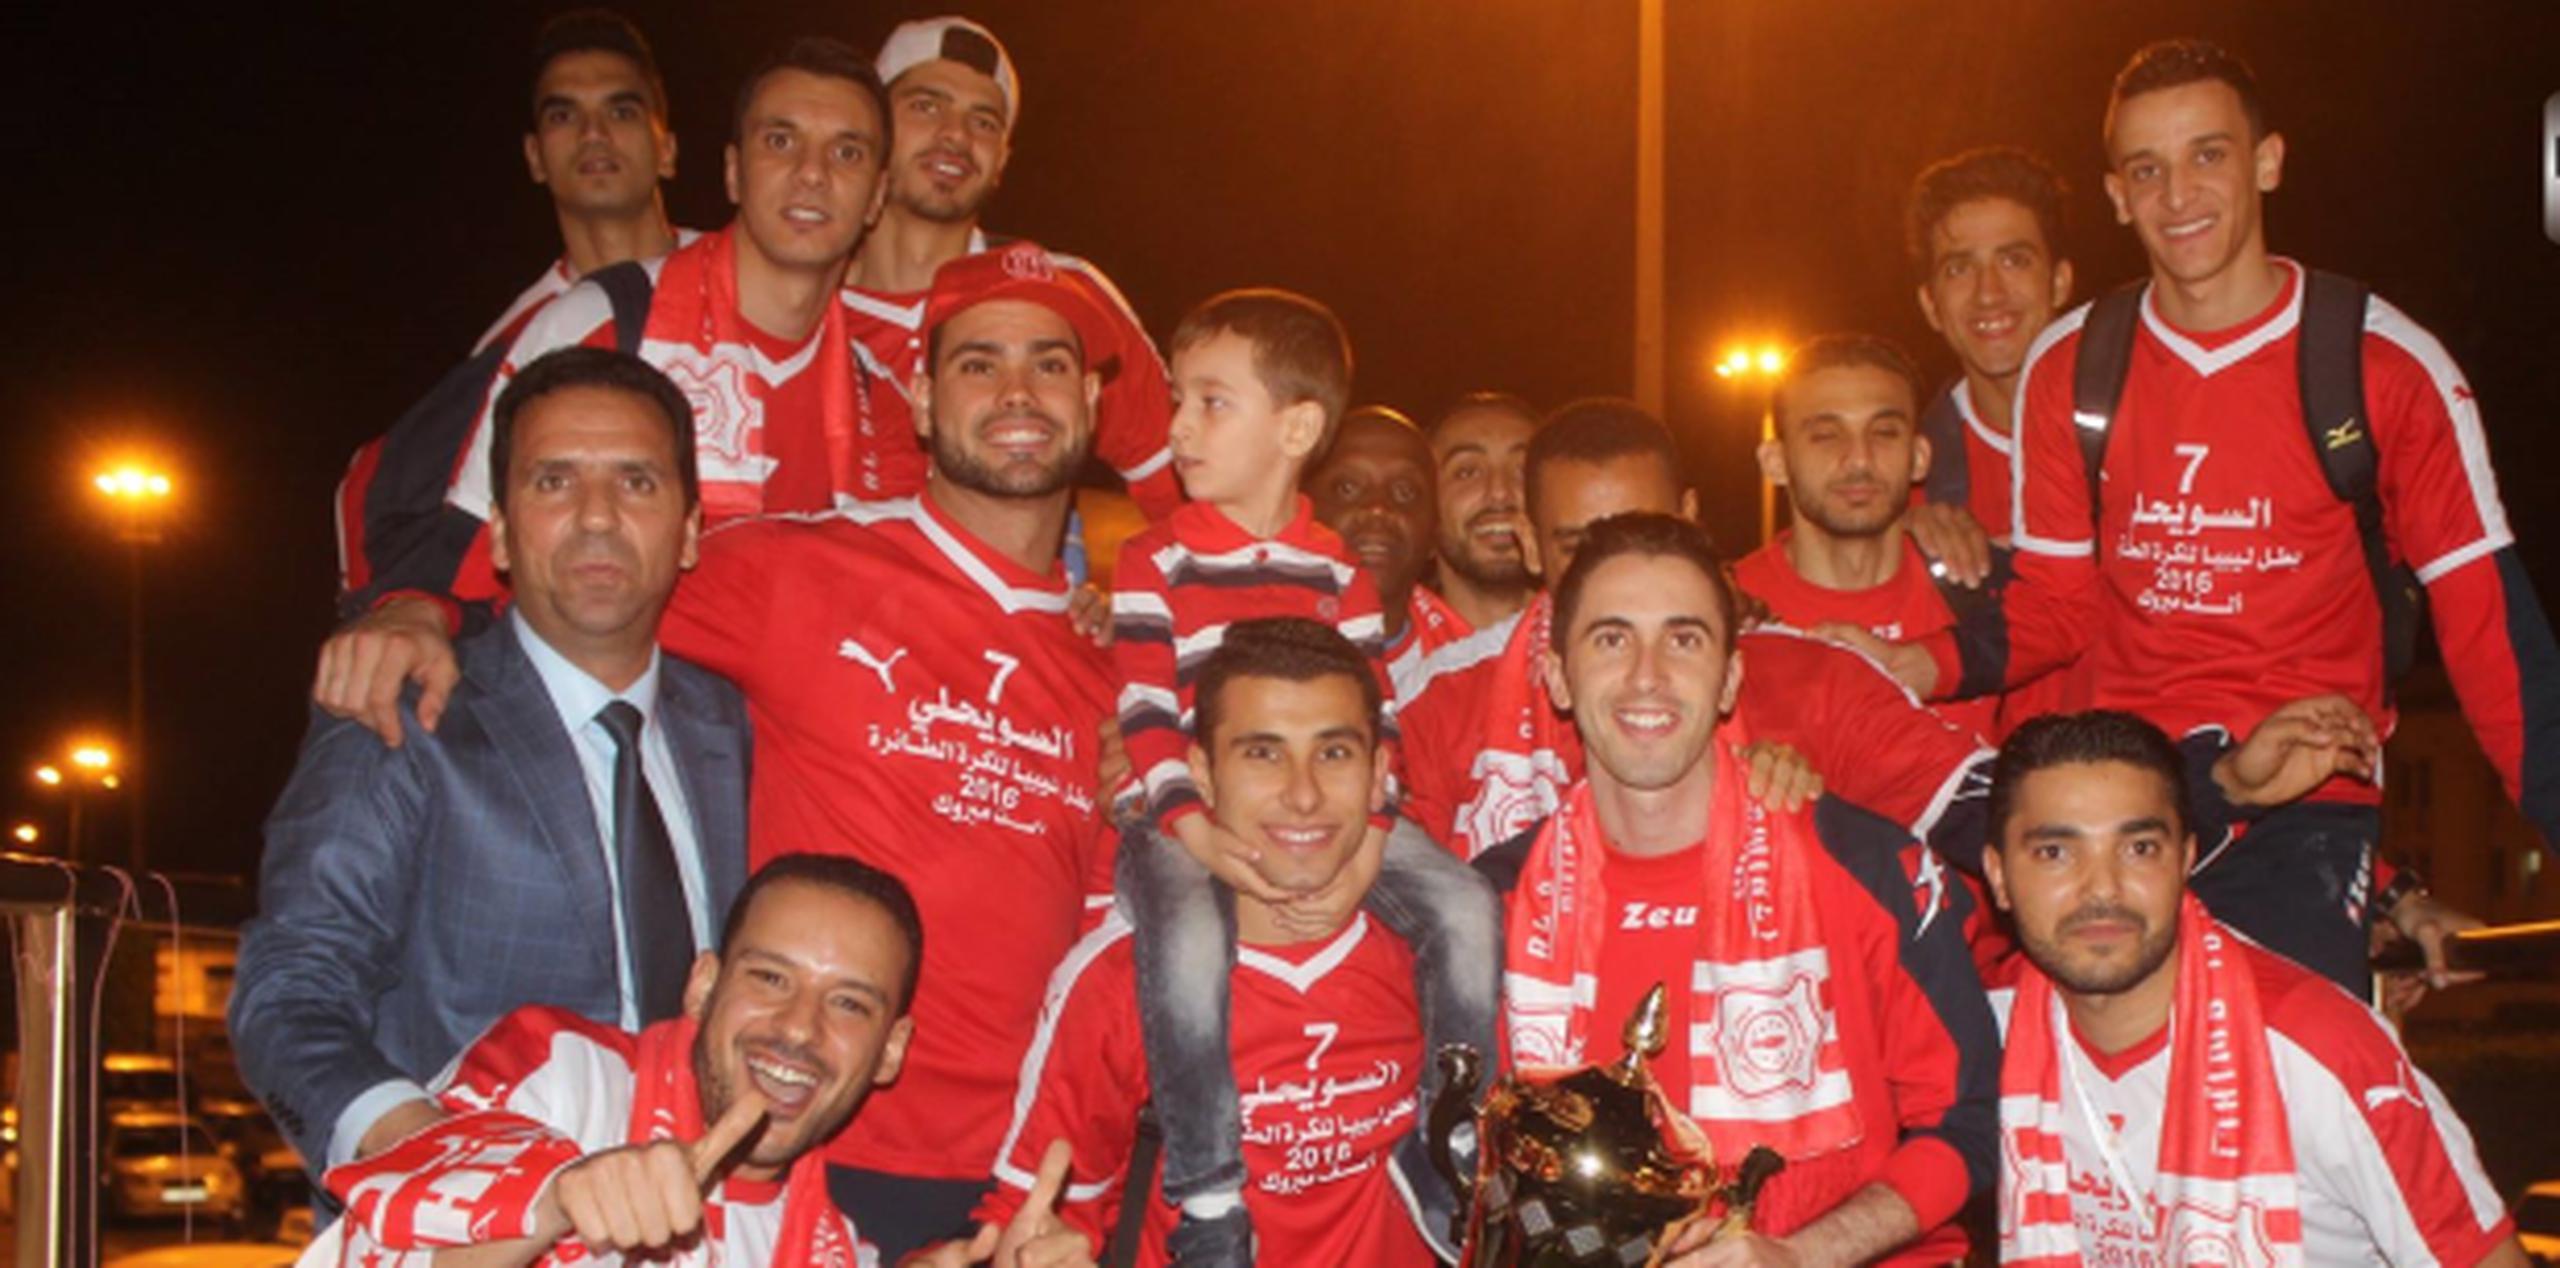 Guzmán, con gorra roja a la izquierda al lado de un niño, jugó para el equipo de Swehly en Libia. (facebook)
